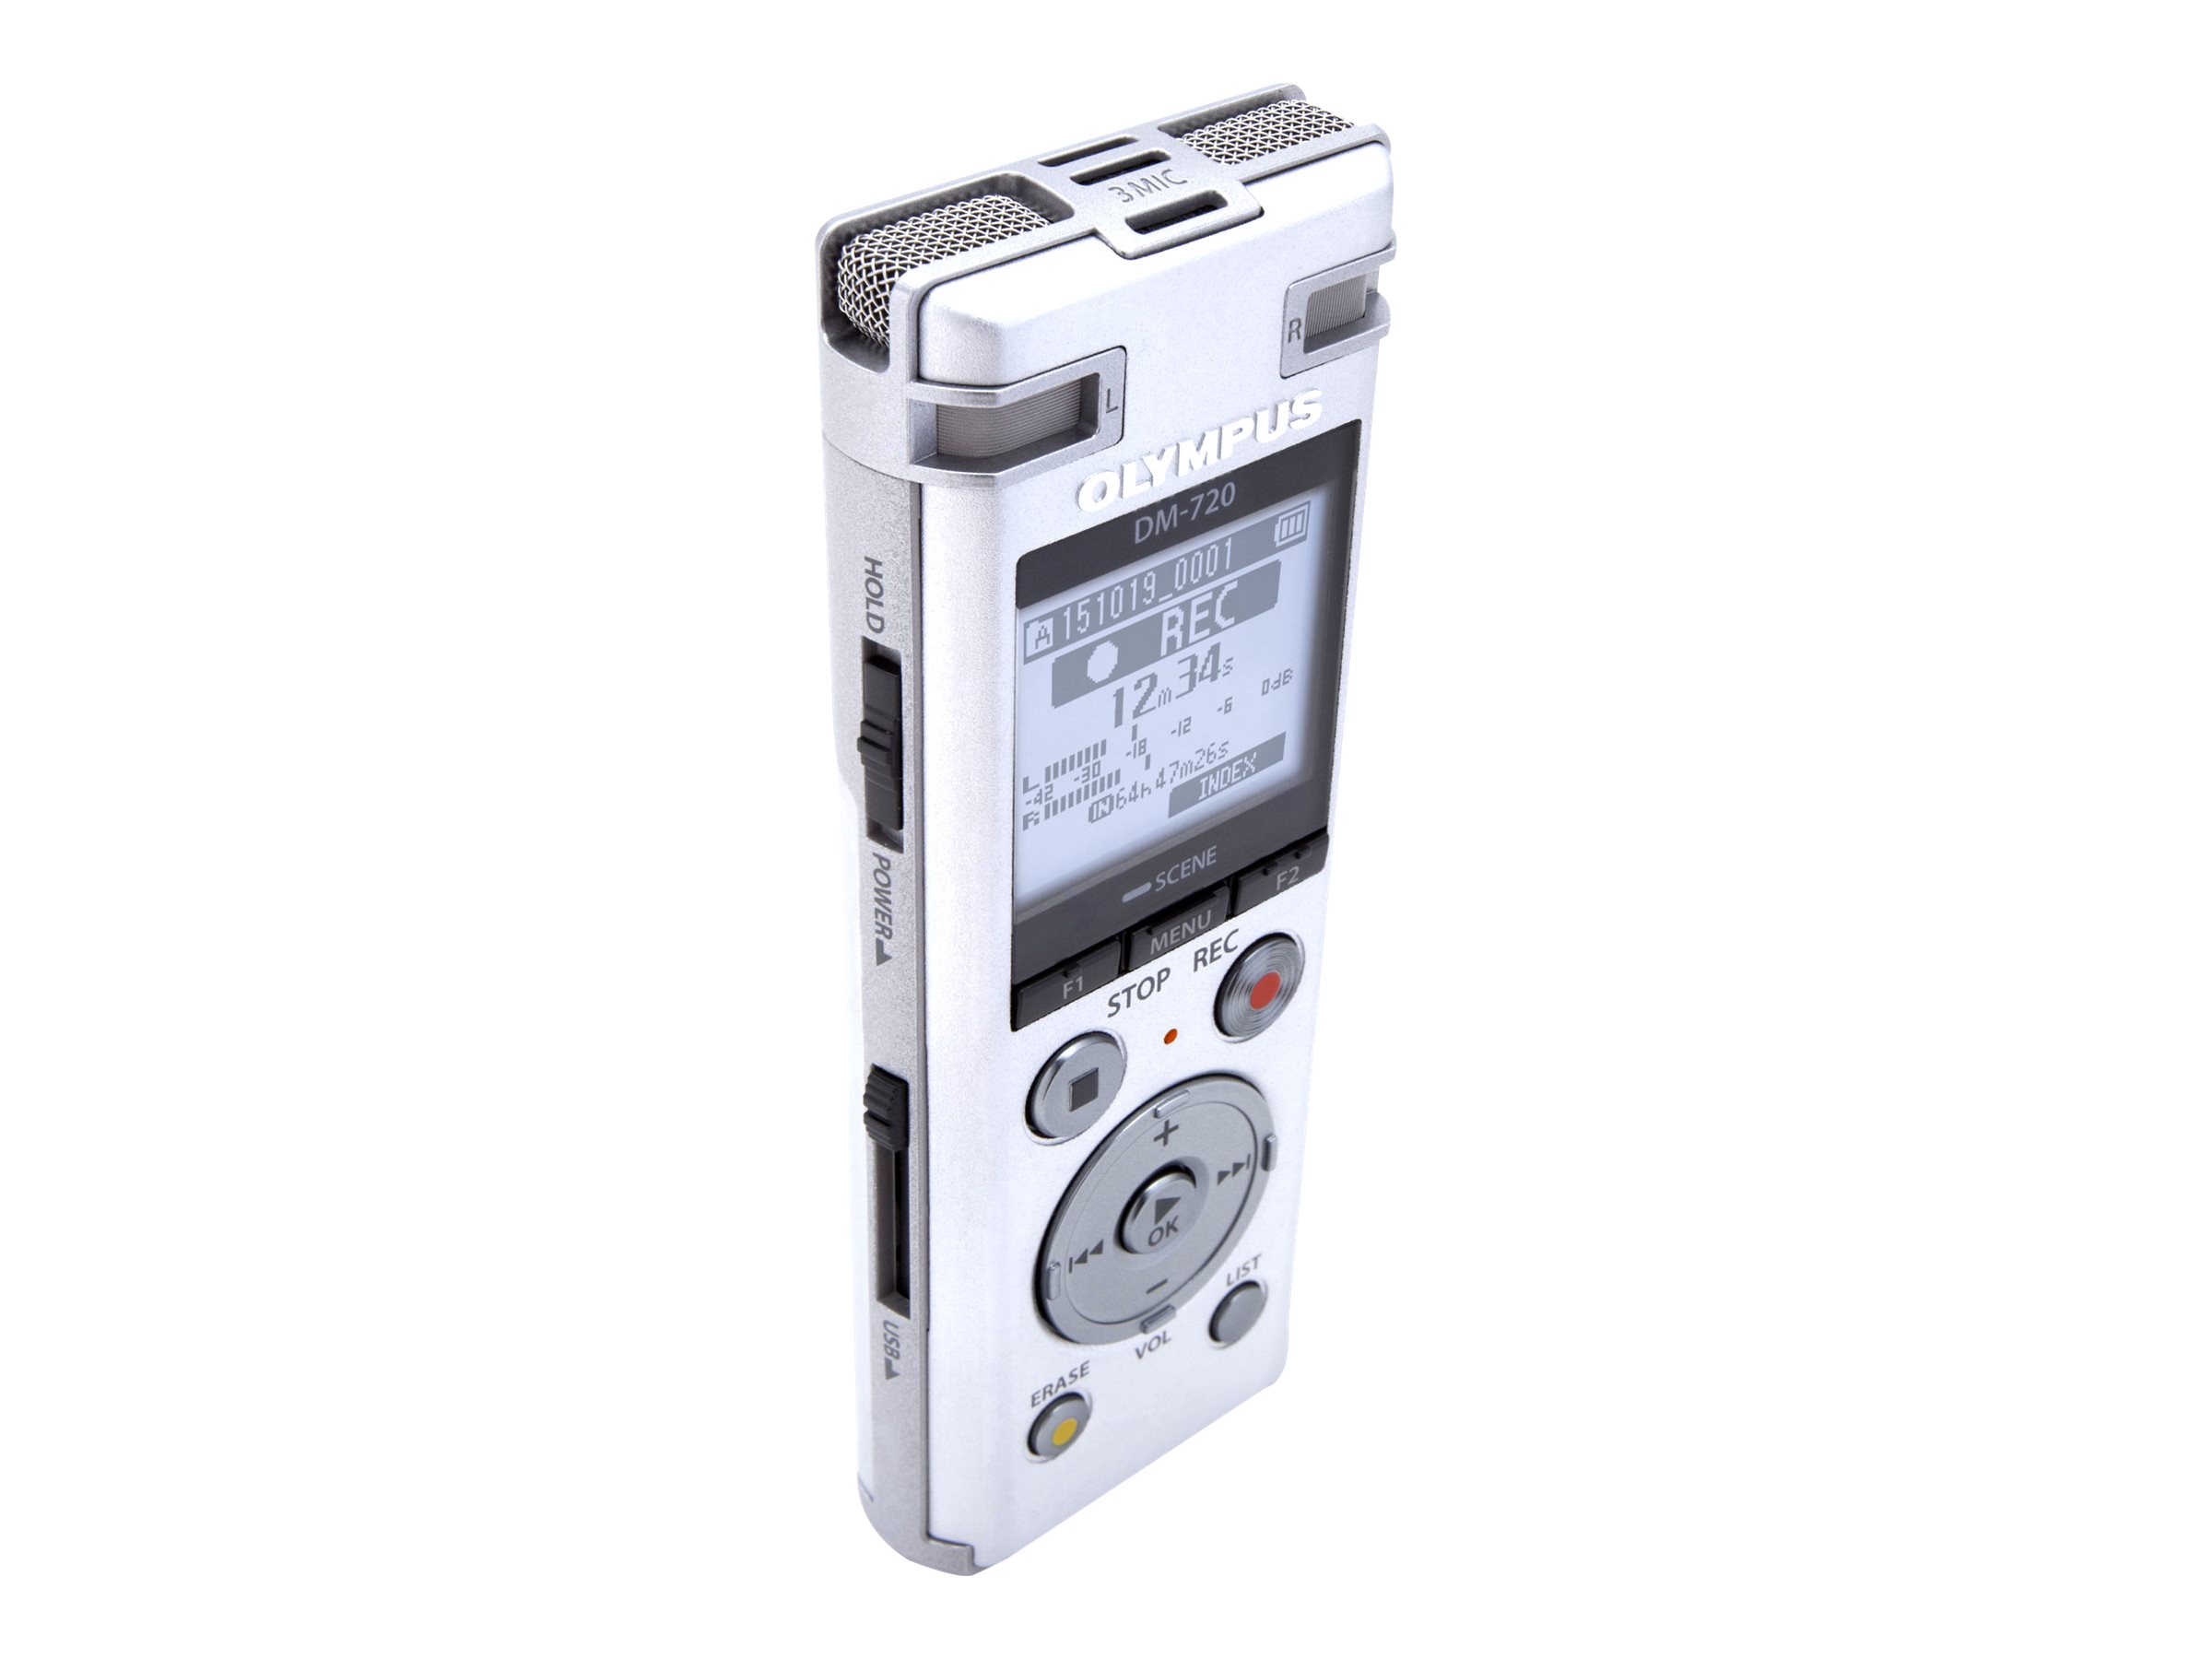 Olympus DM-720 - Voicerecorder - 4 GB - Silber